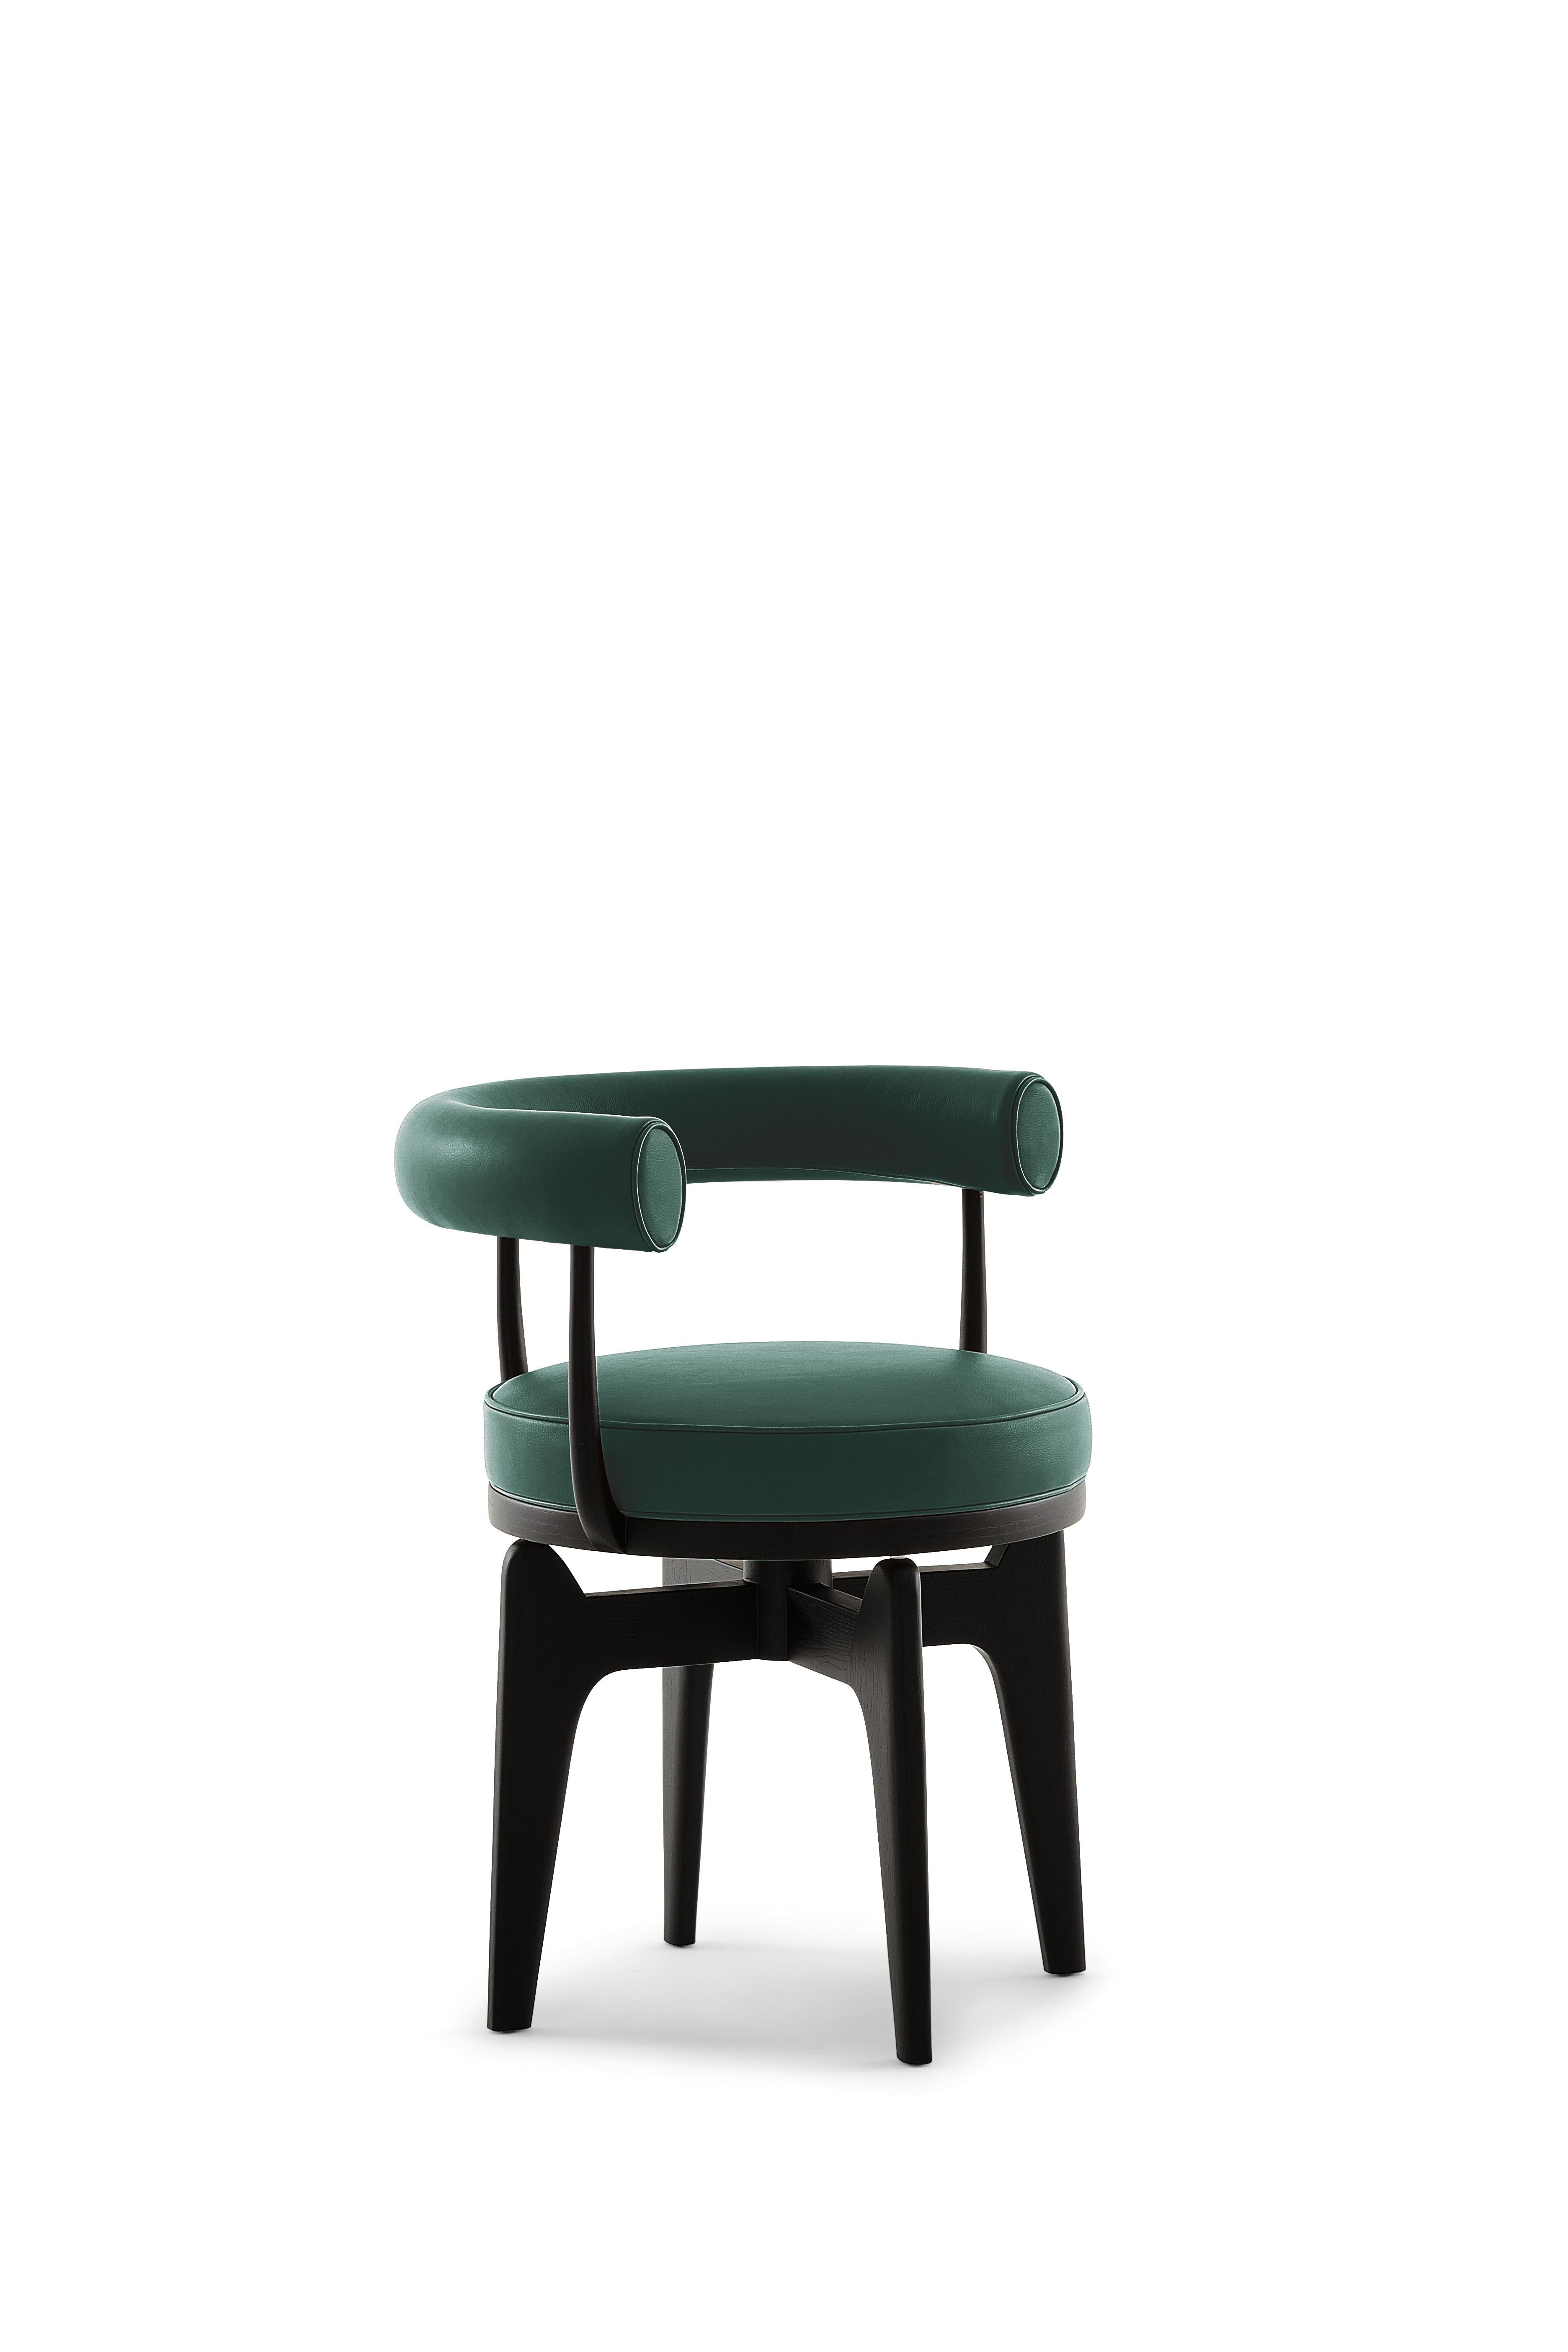 Charlotte Perriand Indochine Sessel
Hergestellt von Cassina in Italien

Dieser Drehsessel ist eine Überarbeitung des LC7, dessen Gestell aus Metallrohr 1927 von Charlotte Perriand entworfen wurde. Es wurde später zusammen mit anderen Möbeln, die